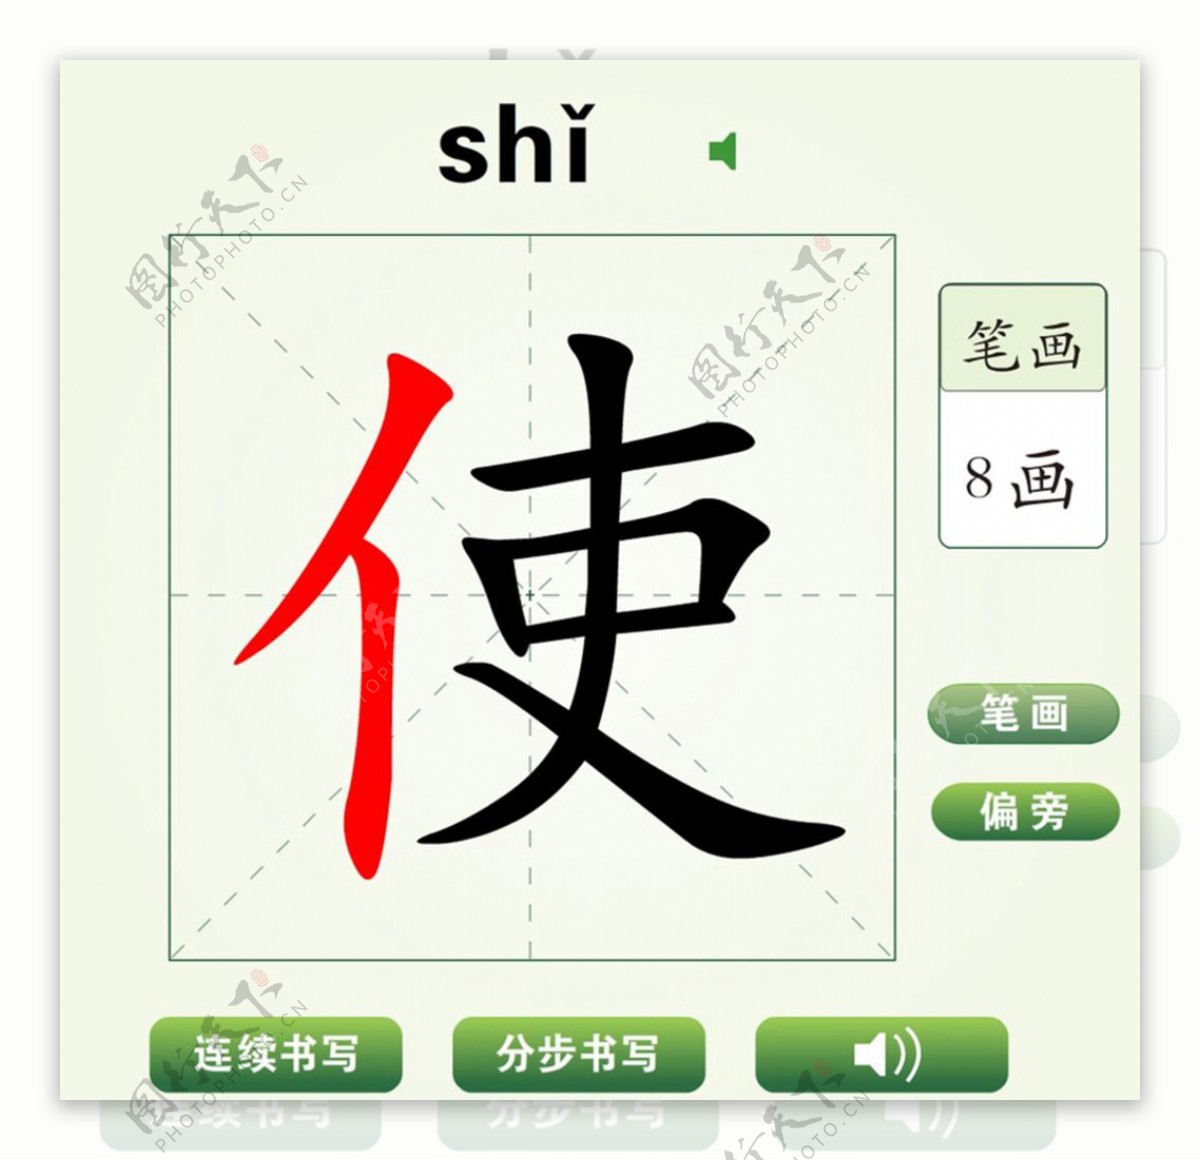 中国汉字使字笔画教学动画视频